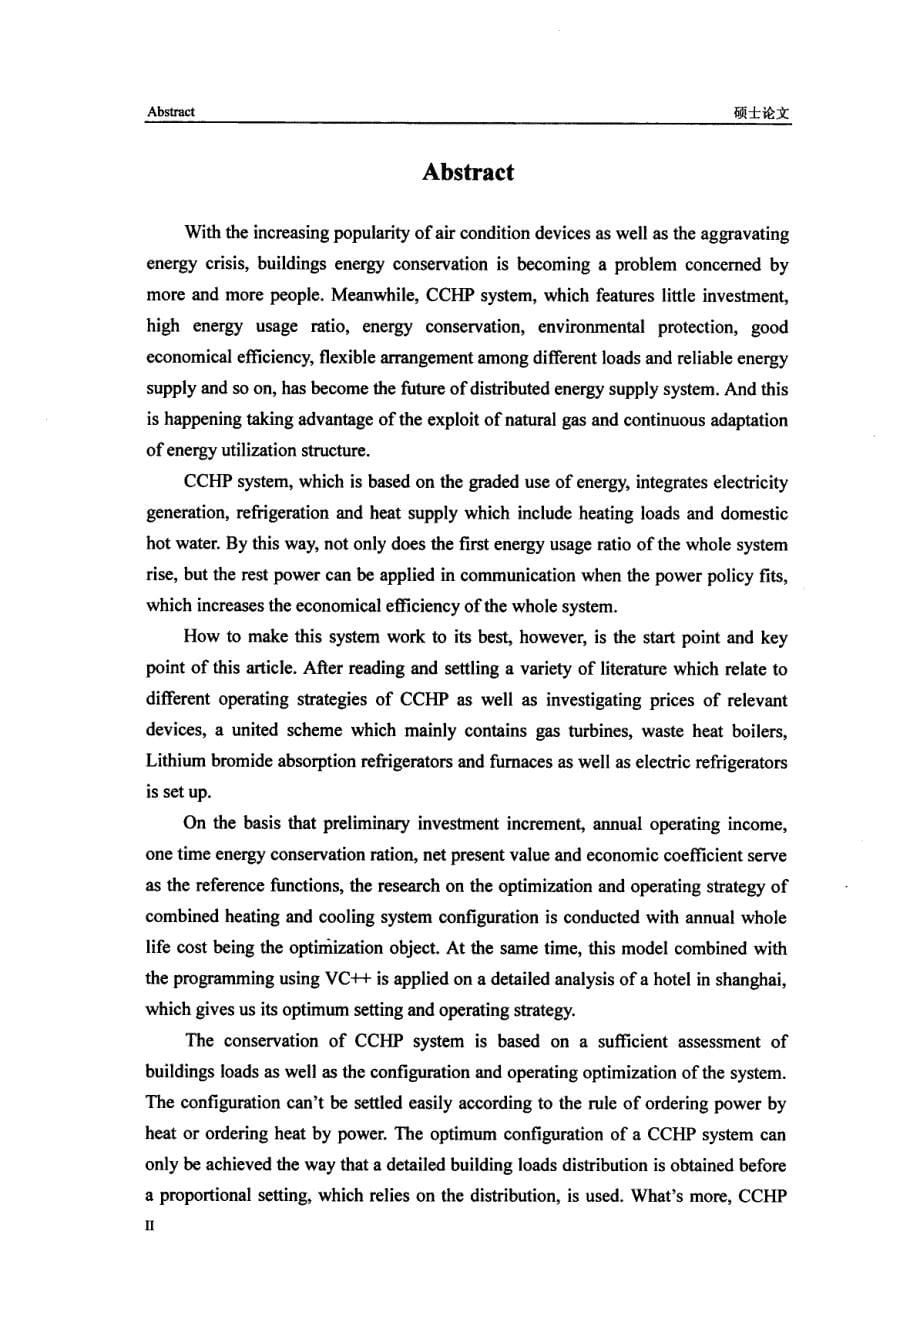 冷热电联供系统优化配置和运行策略研究_第5页